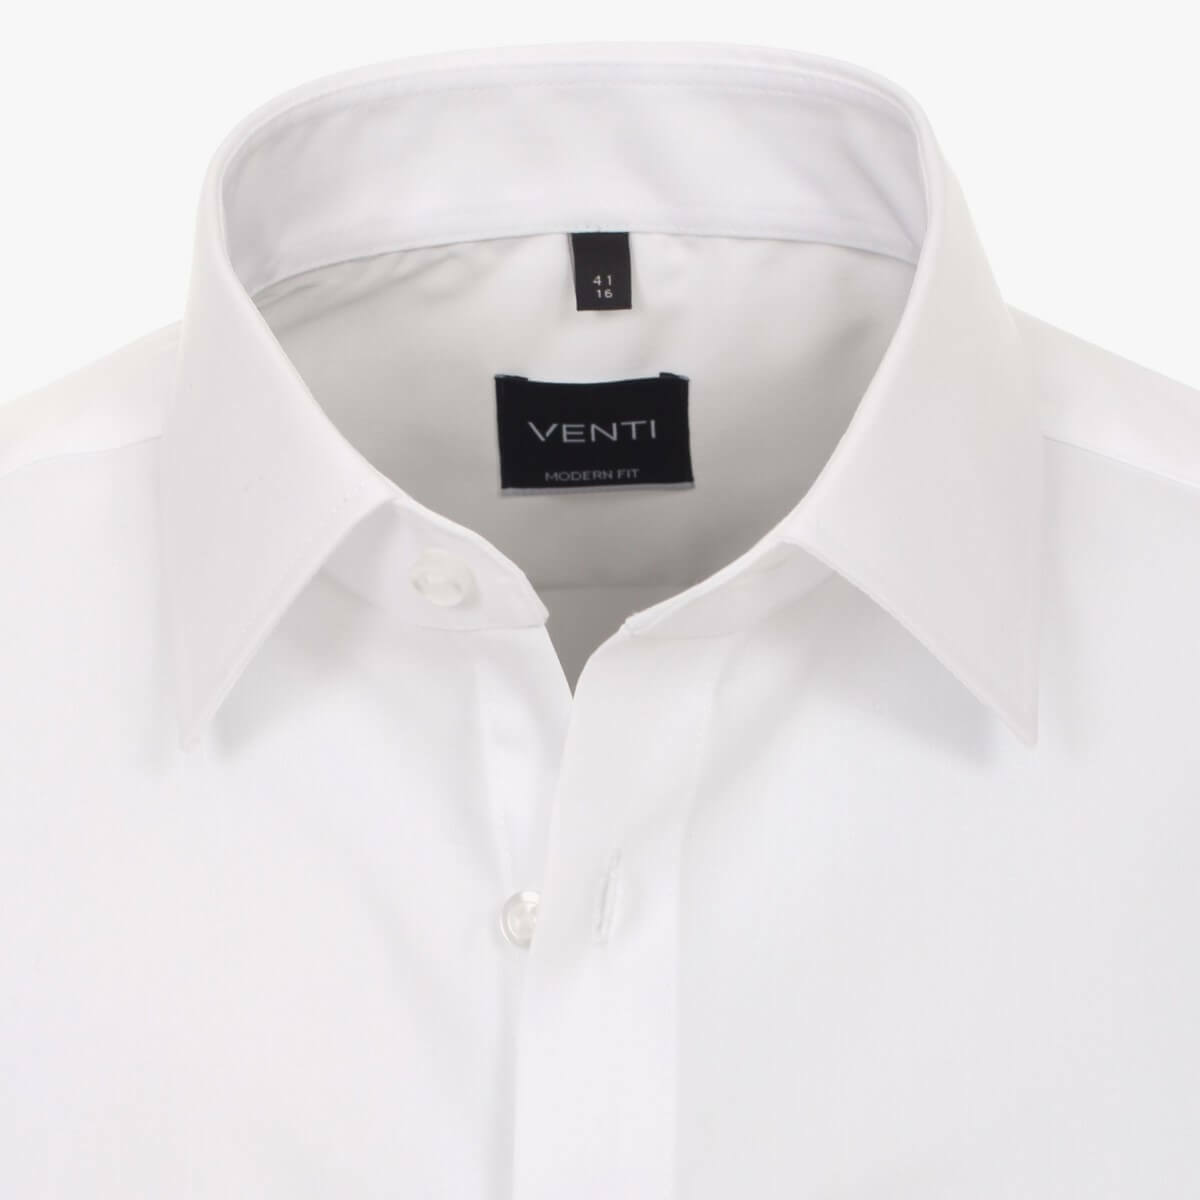 Сорочка Venti Modern Fit 001480-0 белая классическая